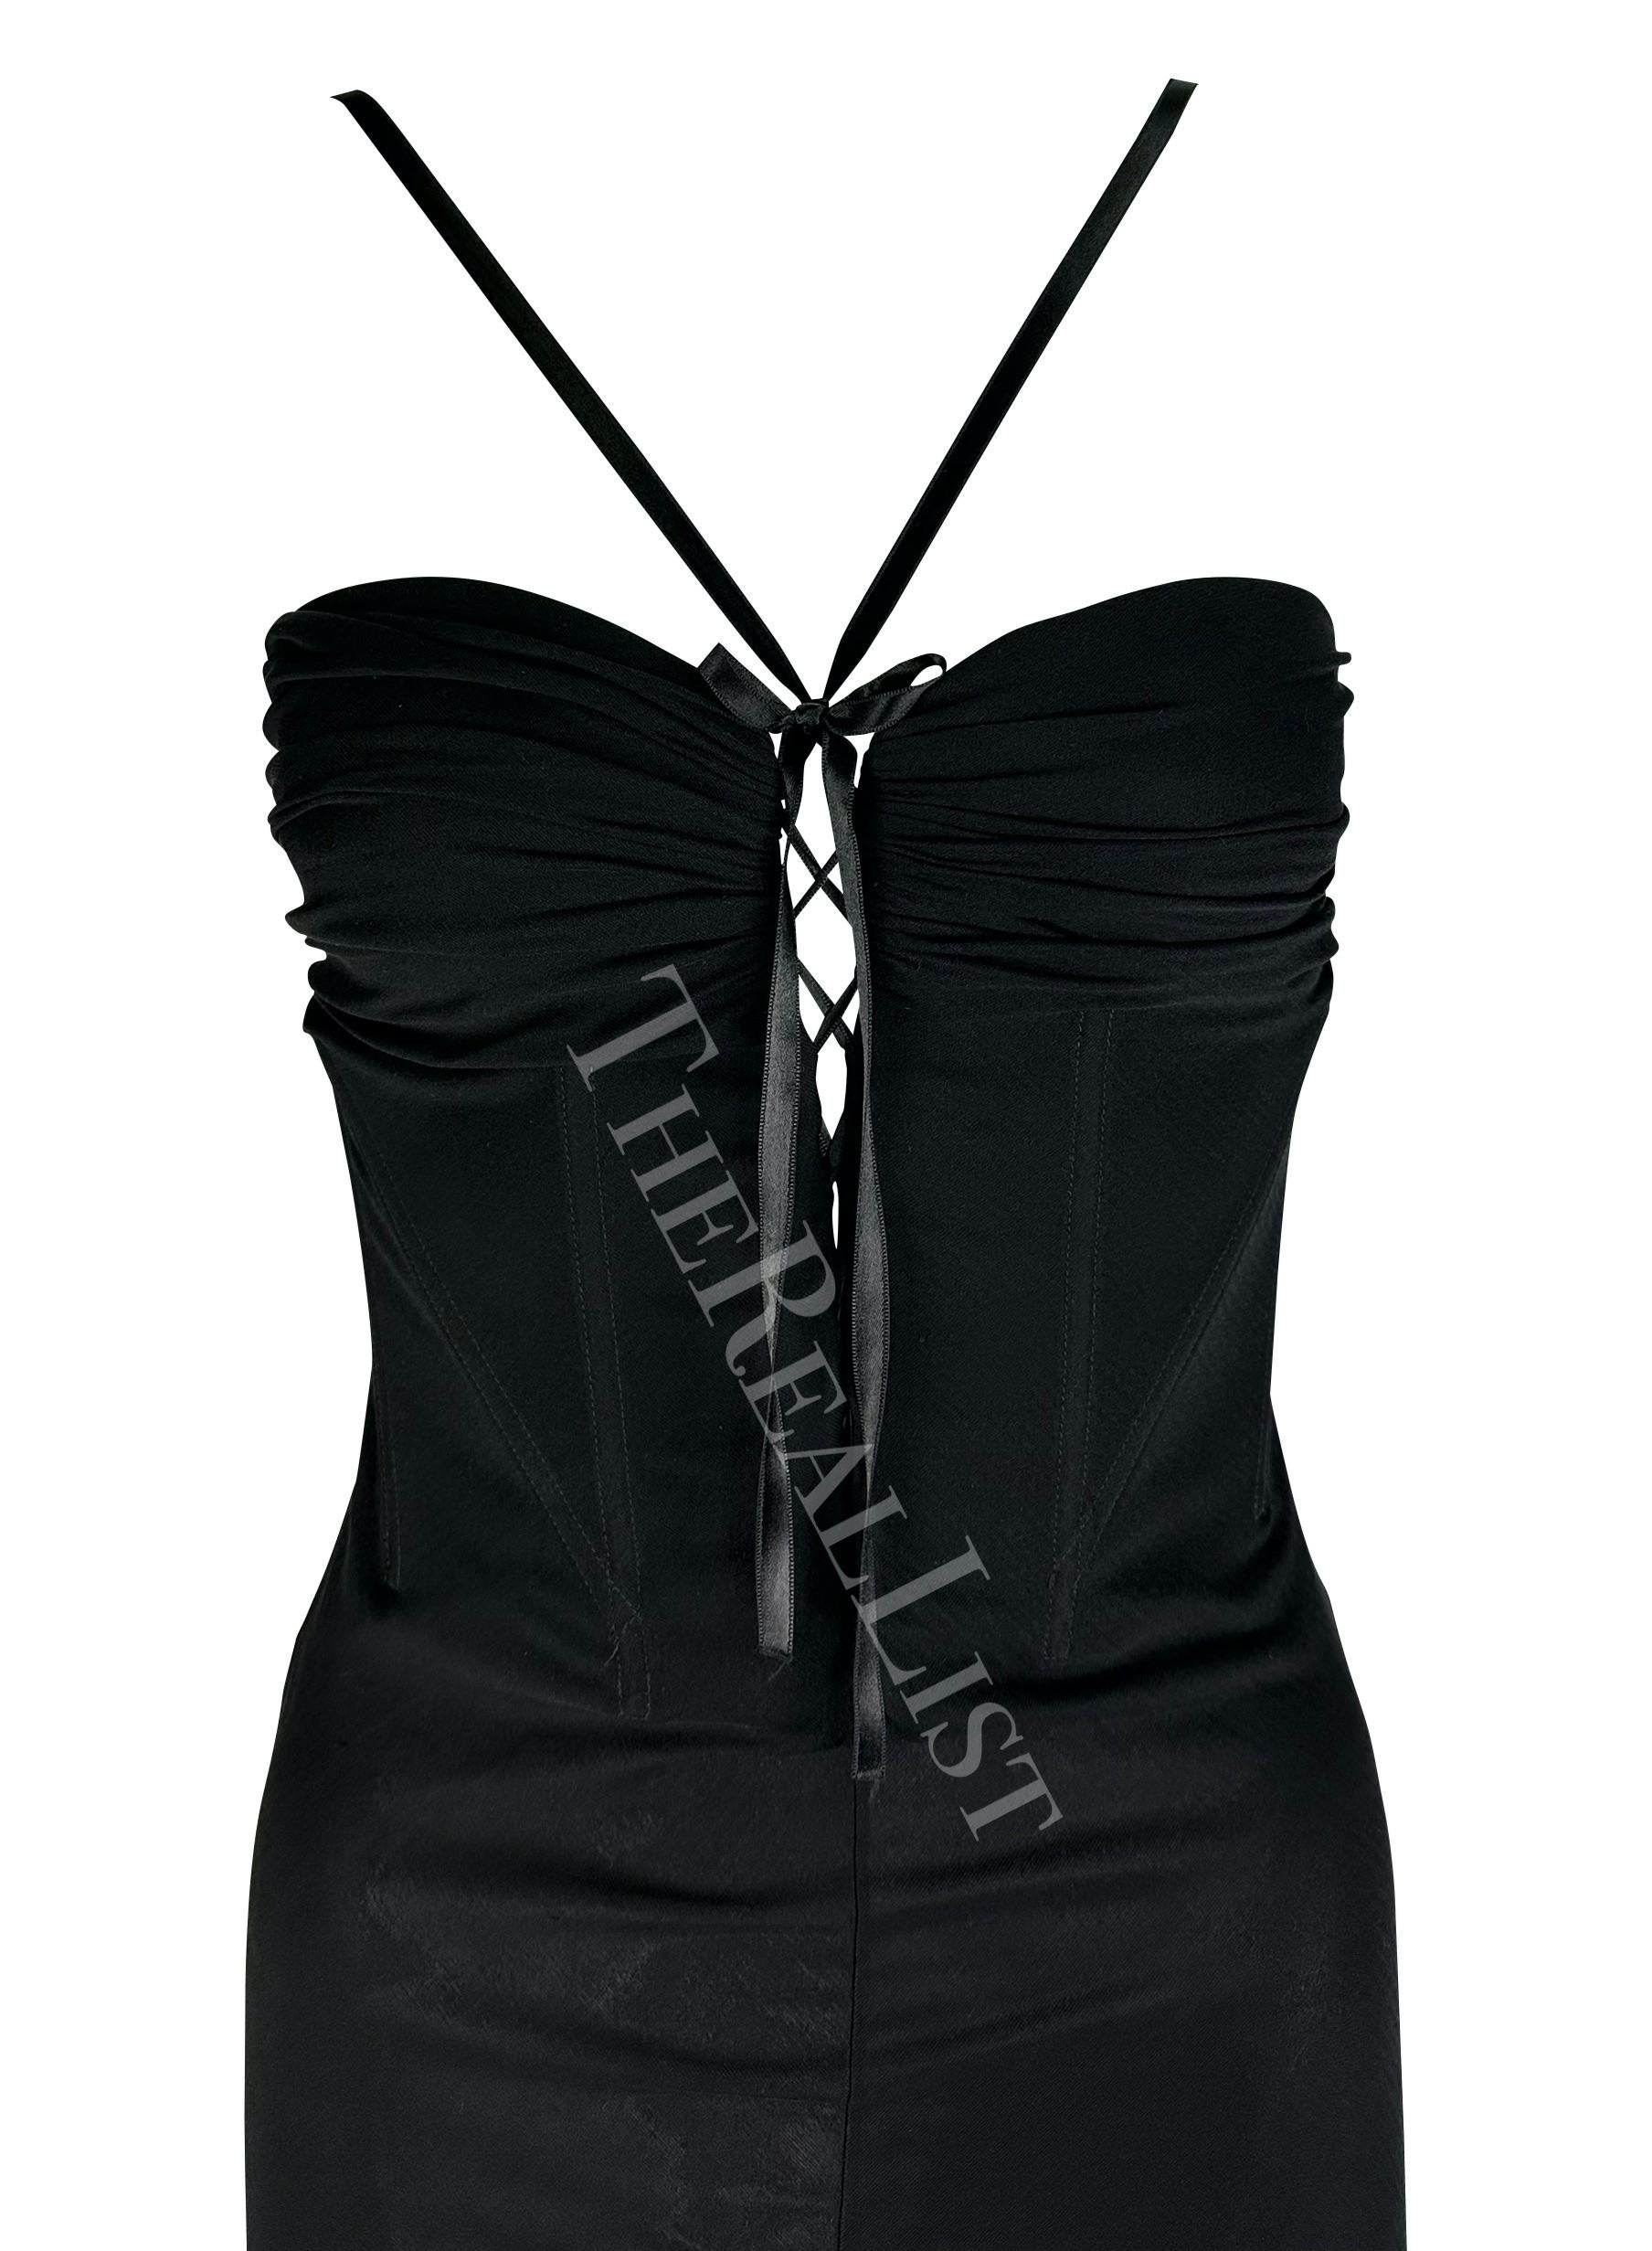 Ich präsentiere ein wunderschönes schwarzes Kleid von Emanuel Ungaro. Dieses halbtransparente Kleid aus den frühen 2000er Jahren ist perfekt feminin und sexy. Das Kleid hat einen tiefen Ausschnitt, eine Schnürung zwischen den Brüsten, ein